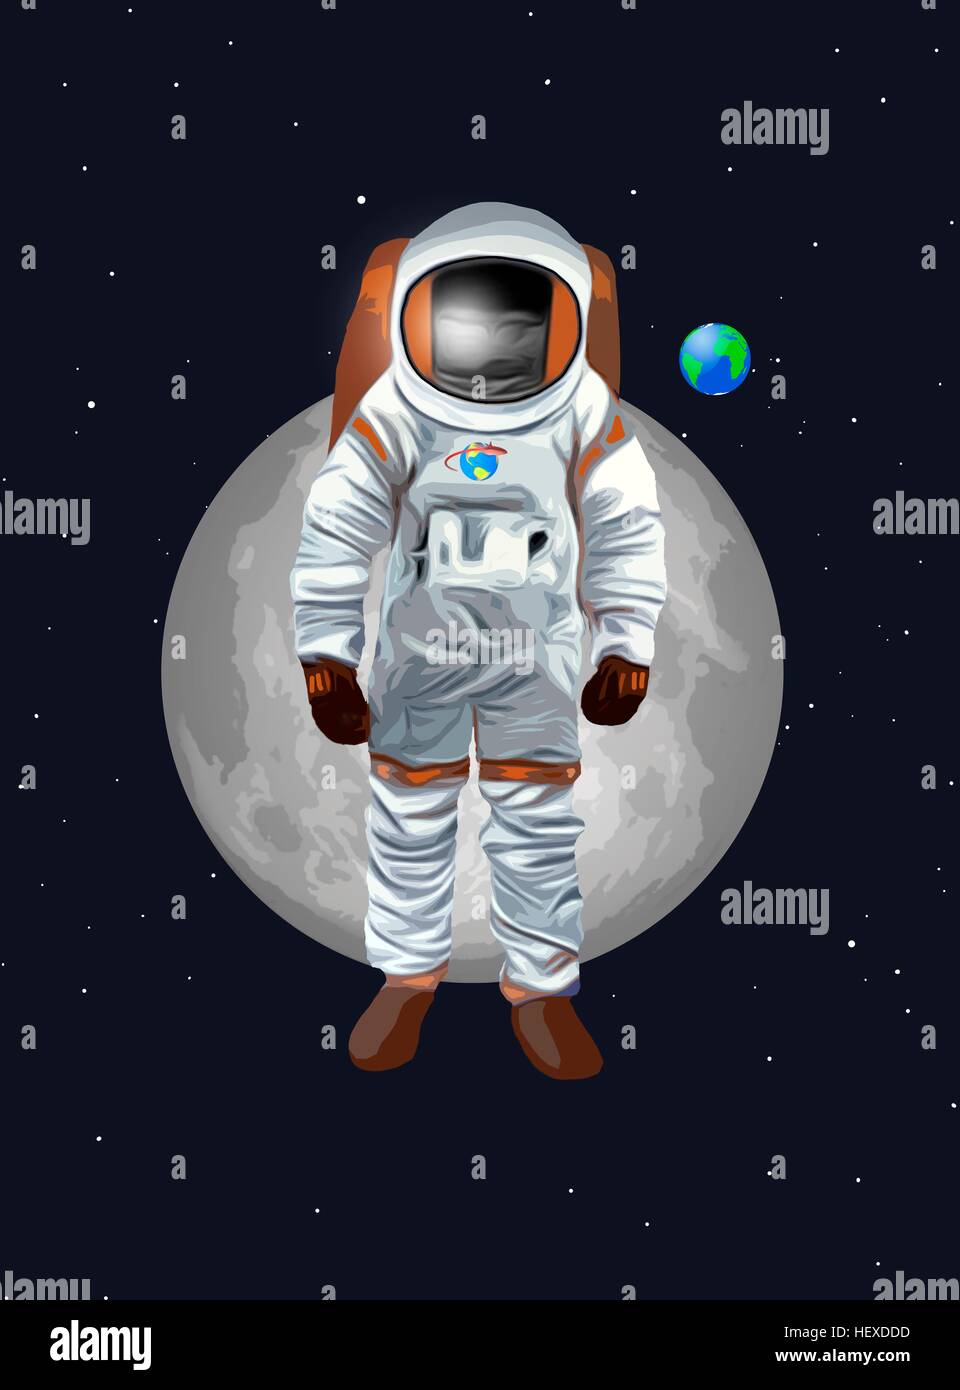 Illustrazione di un uomo nello spazio o astronauta, adatto per i bambini della pubblicazione. L'astronauta è in piedi di fronte della terra e della luna. Foto Stock